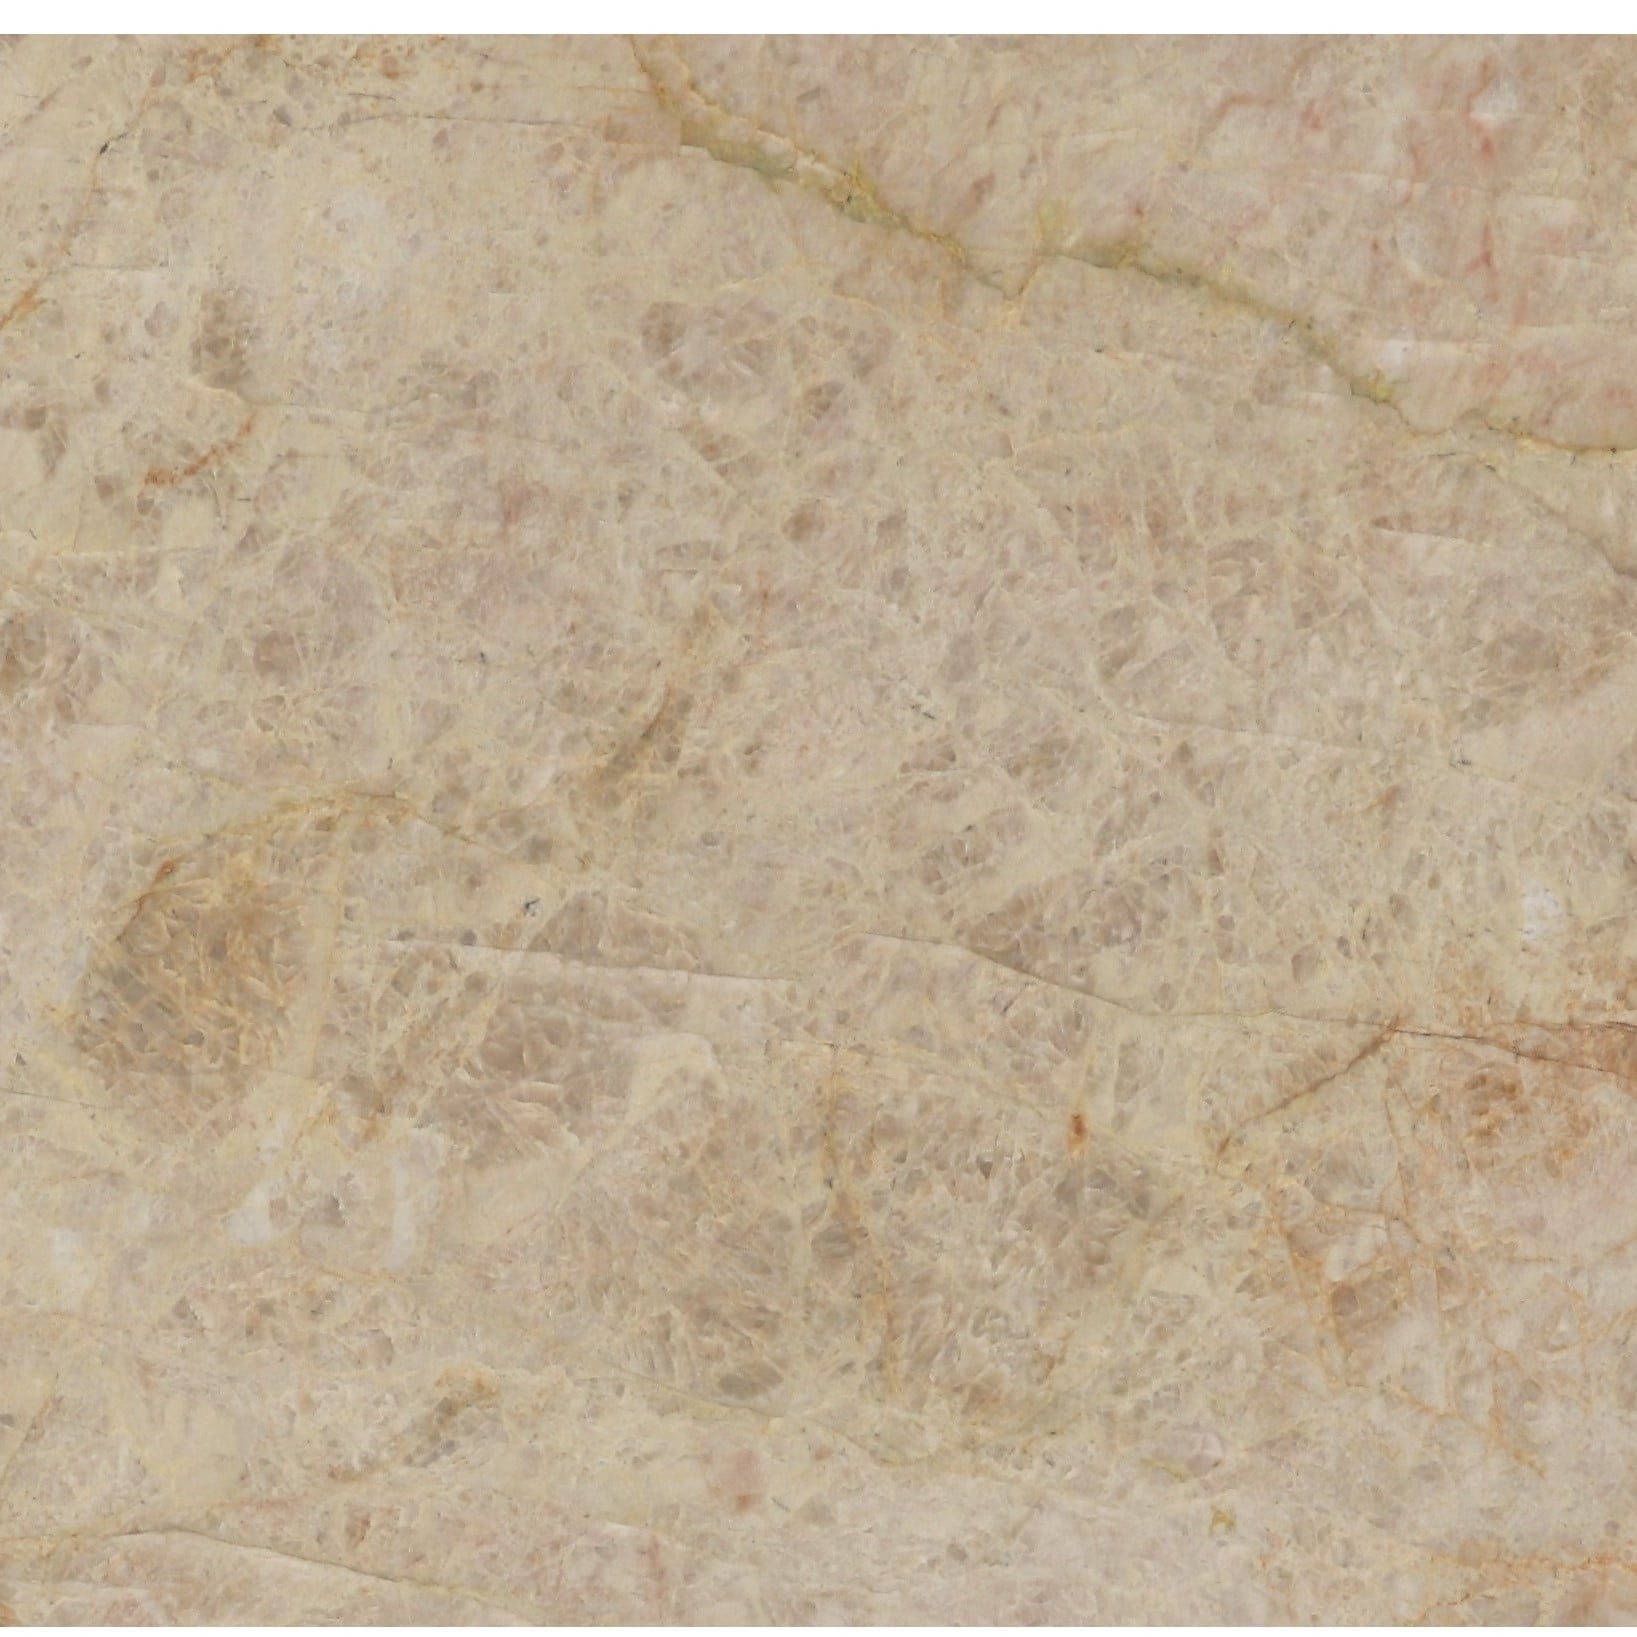 Stonemark Savoie Quartzite swatch